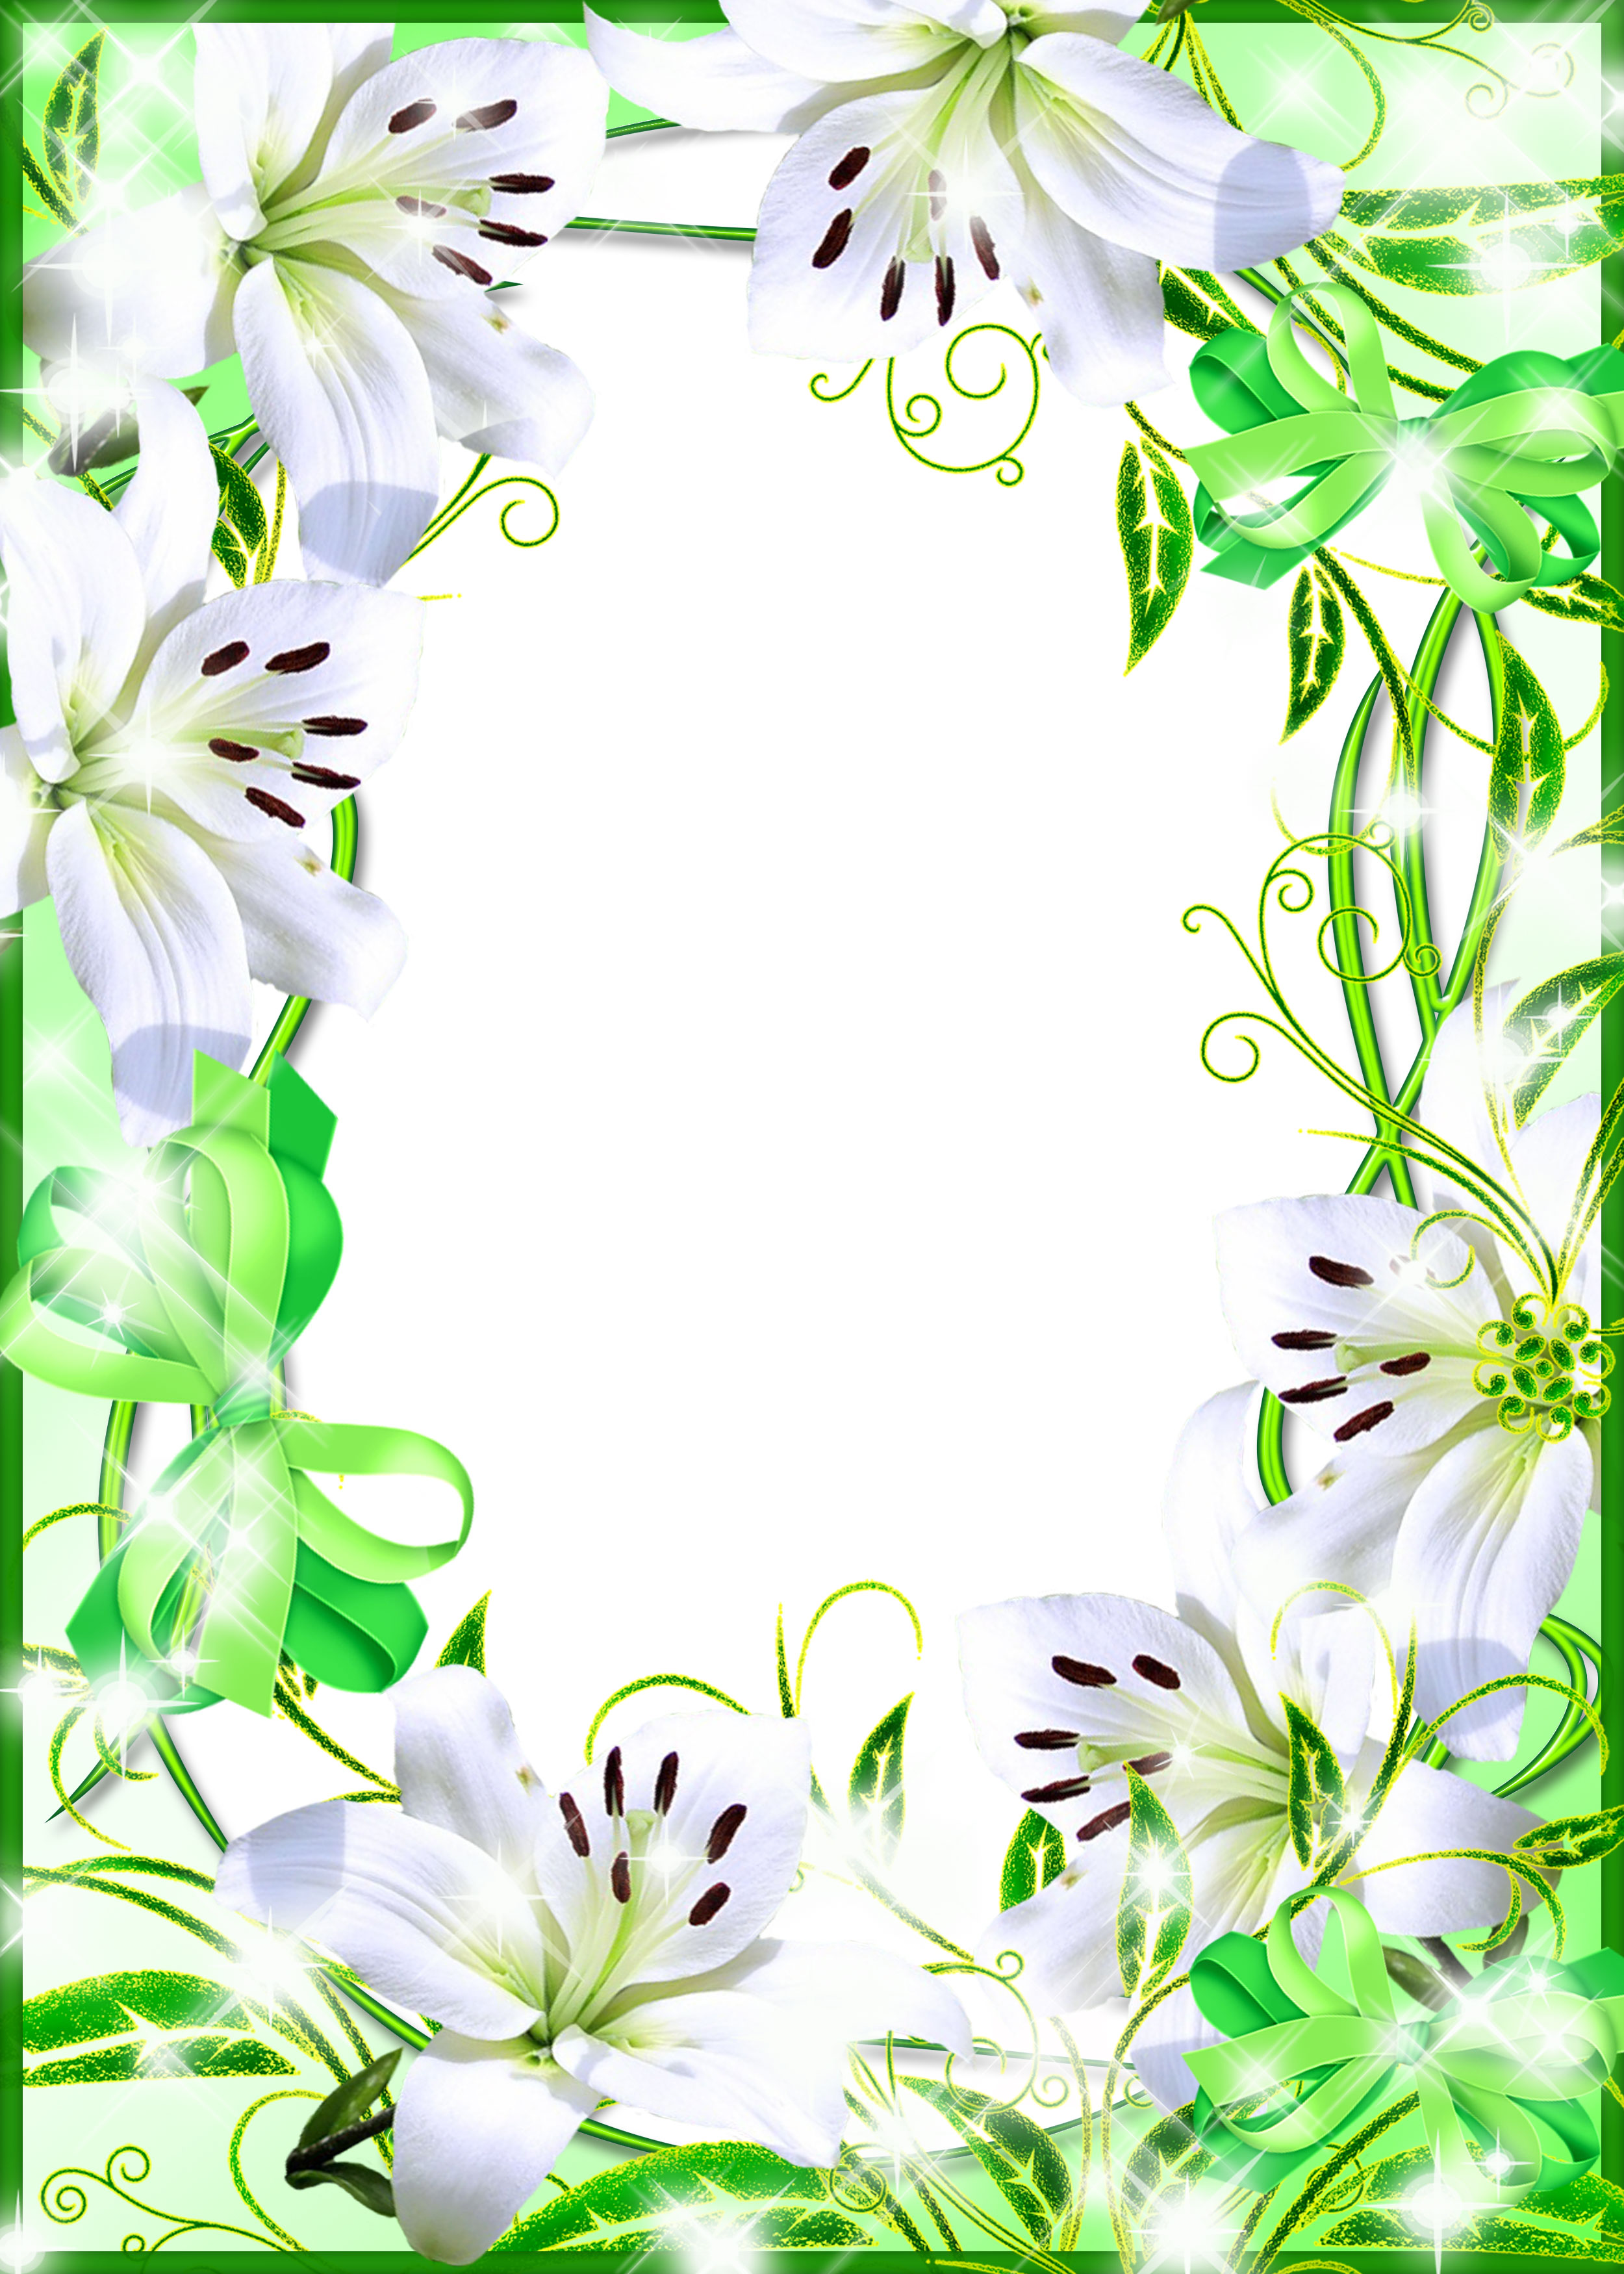 壁紙 背景イラスト 花のフレーム 外枠 No 111 白ユリ 緑 リボン